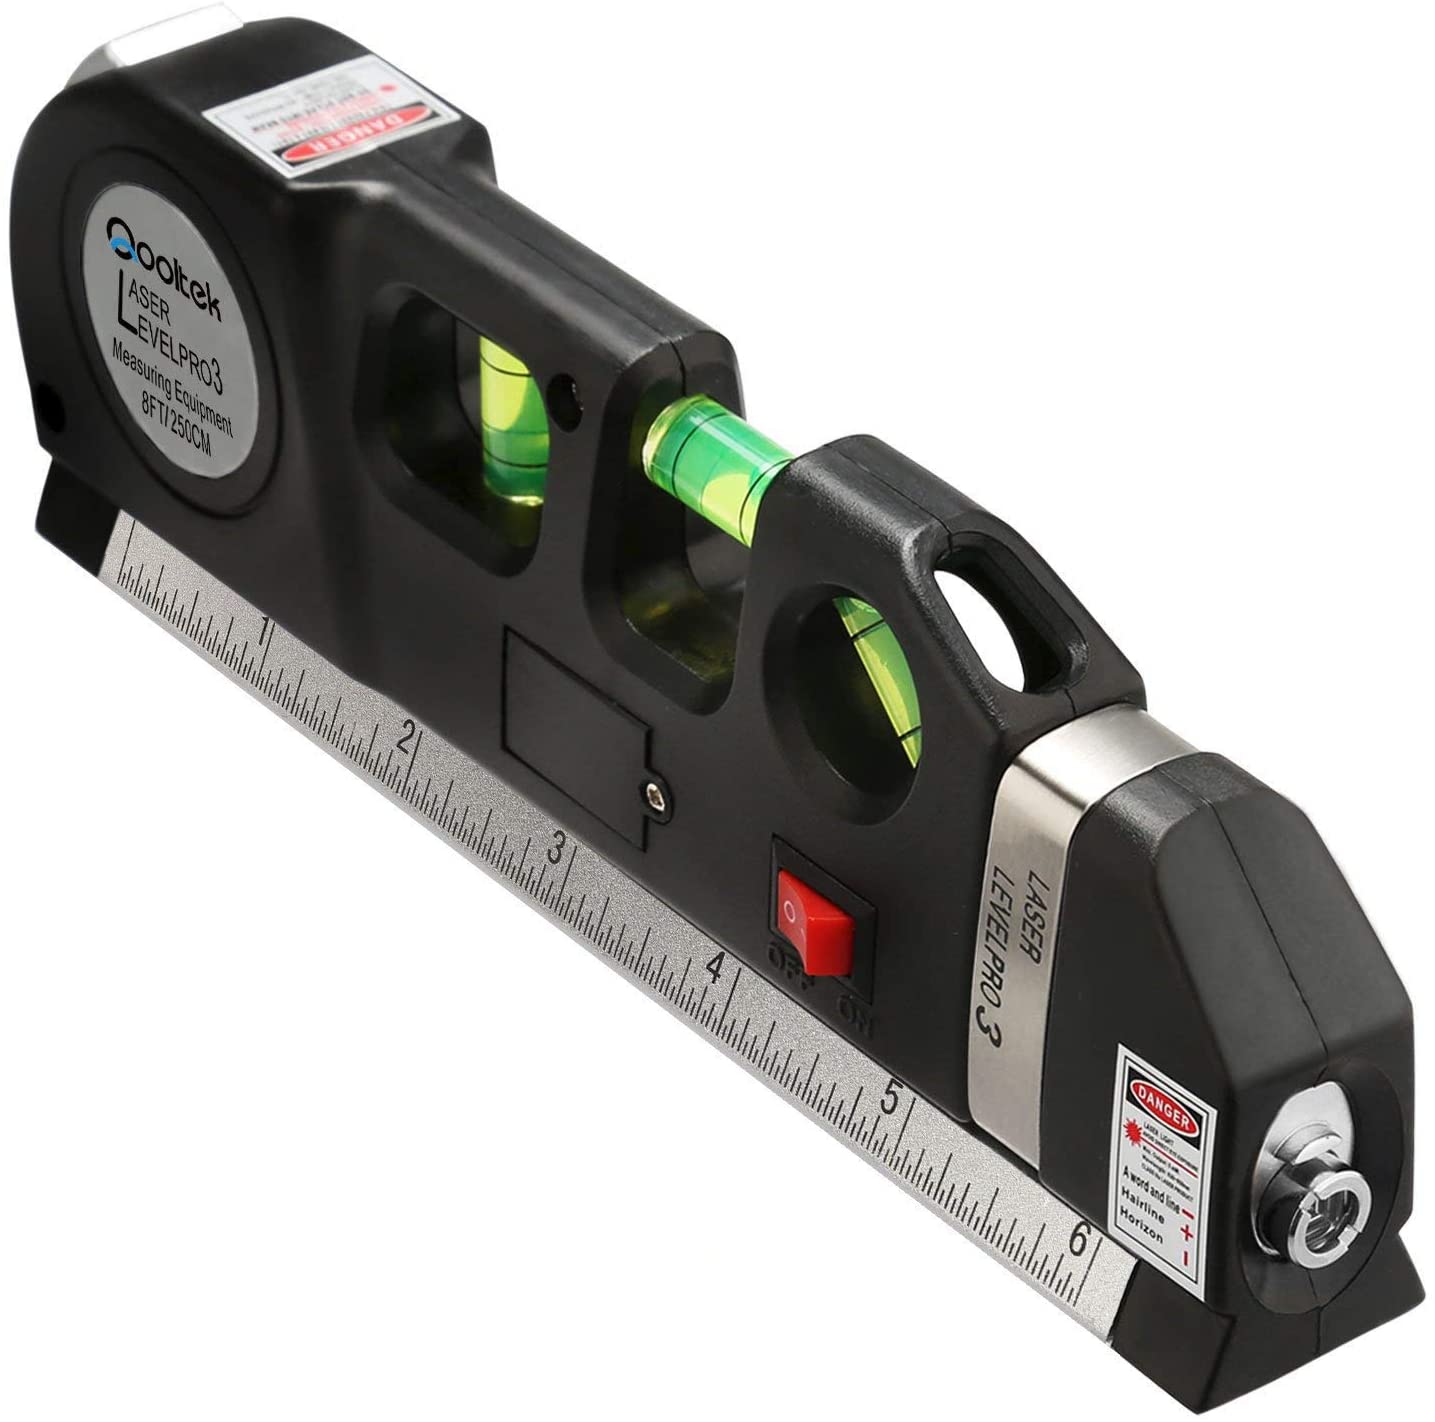 Qooltek Multipurpose Laser Level Cross Line Ruler